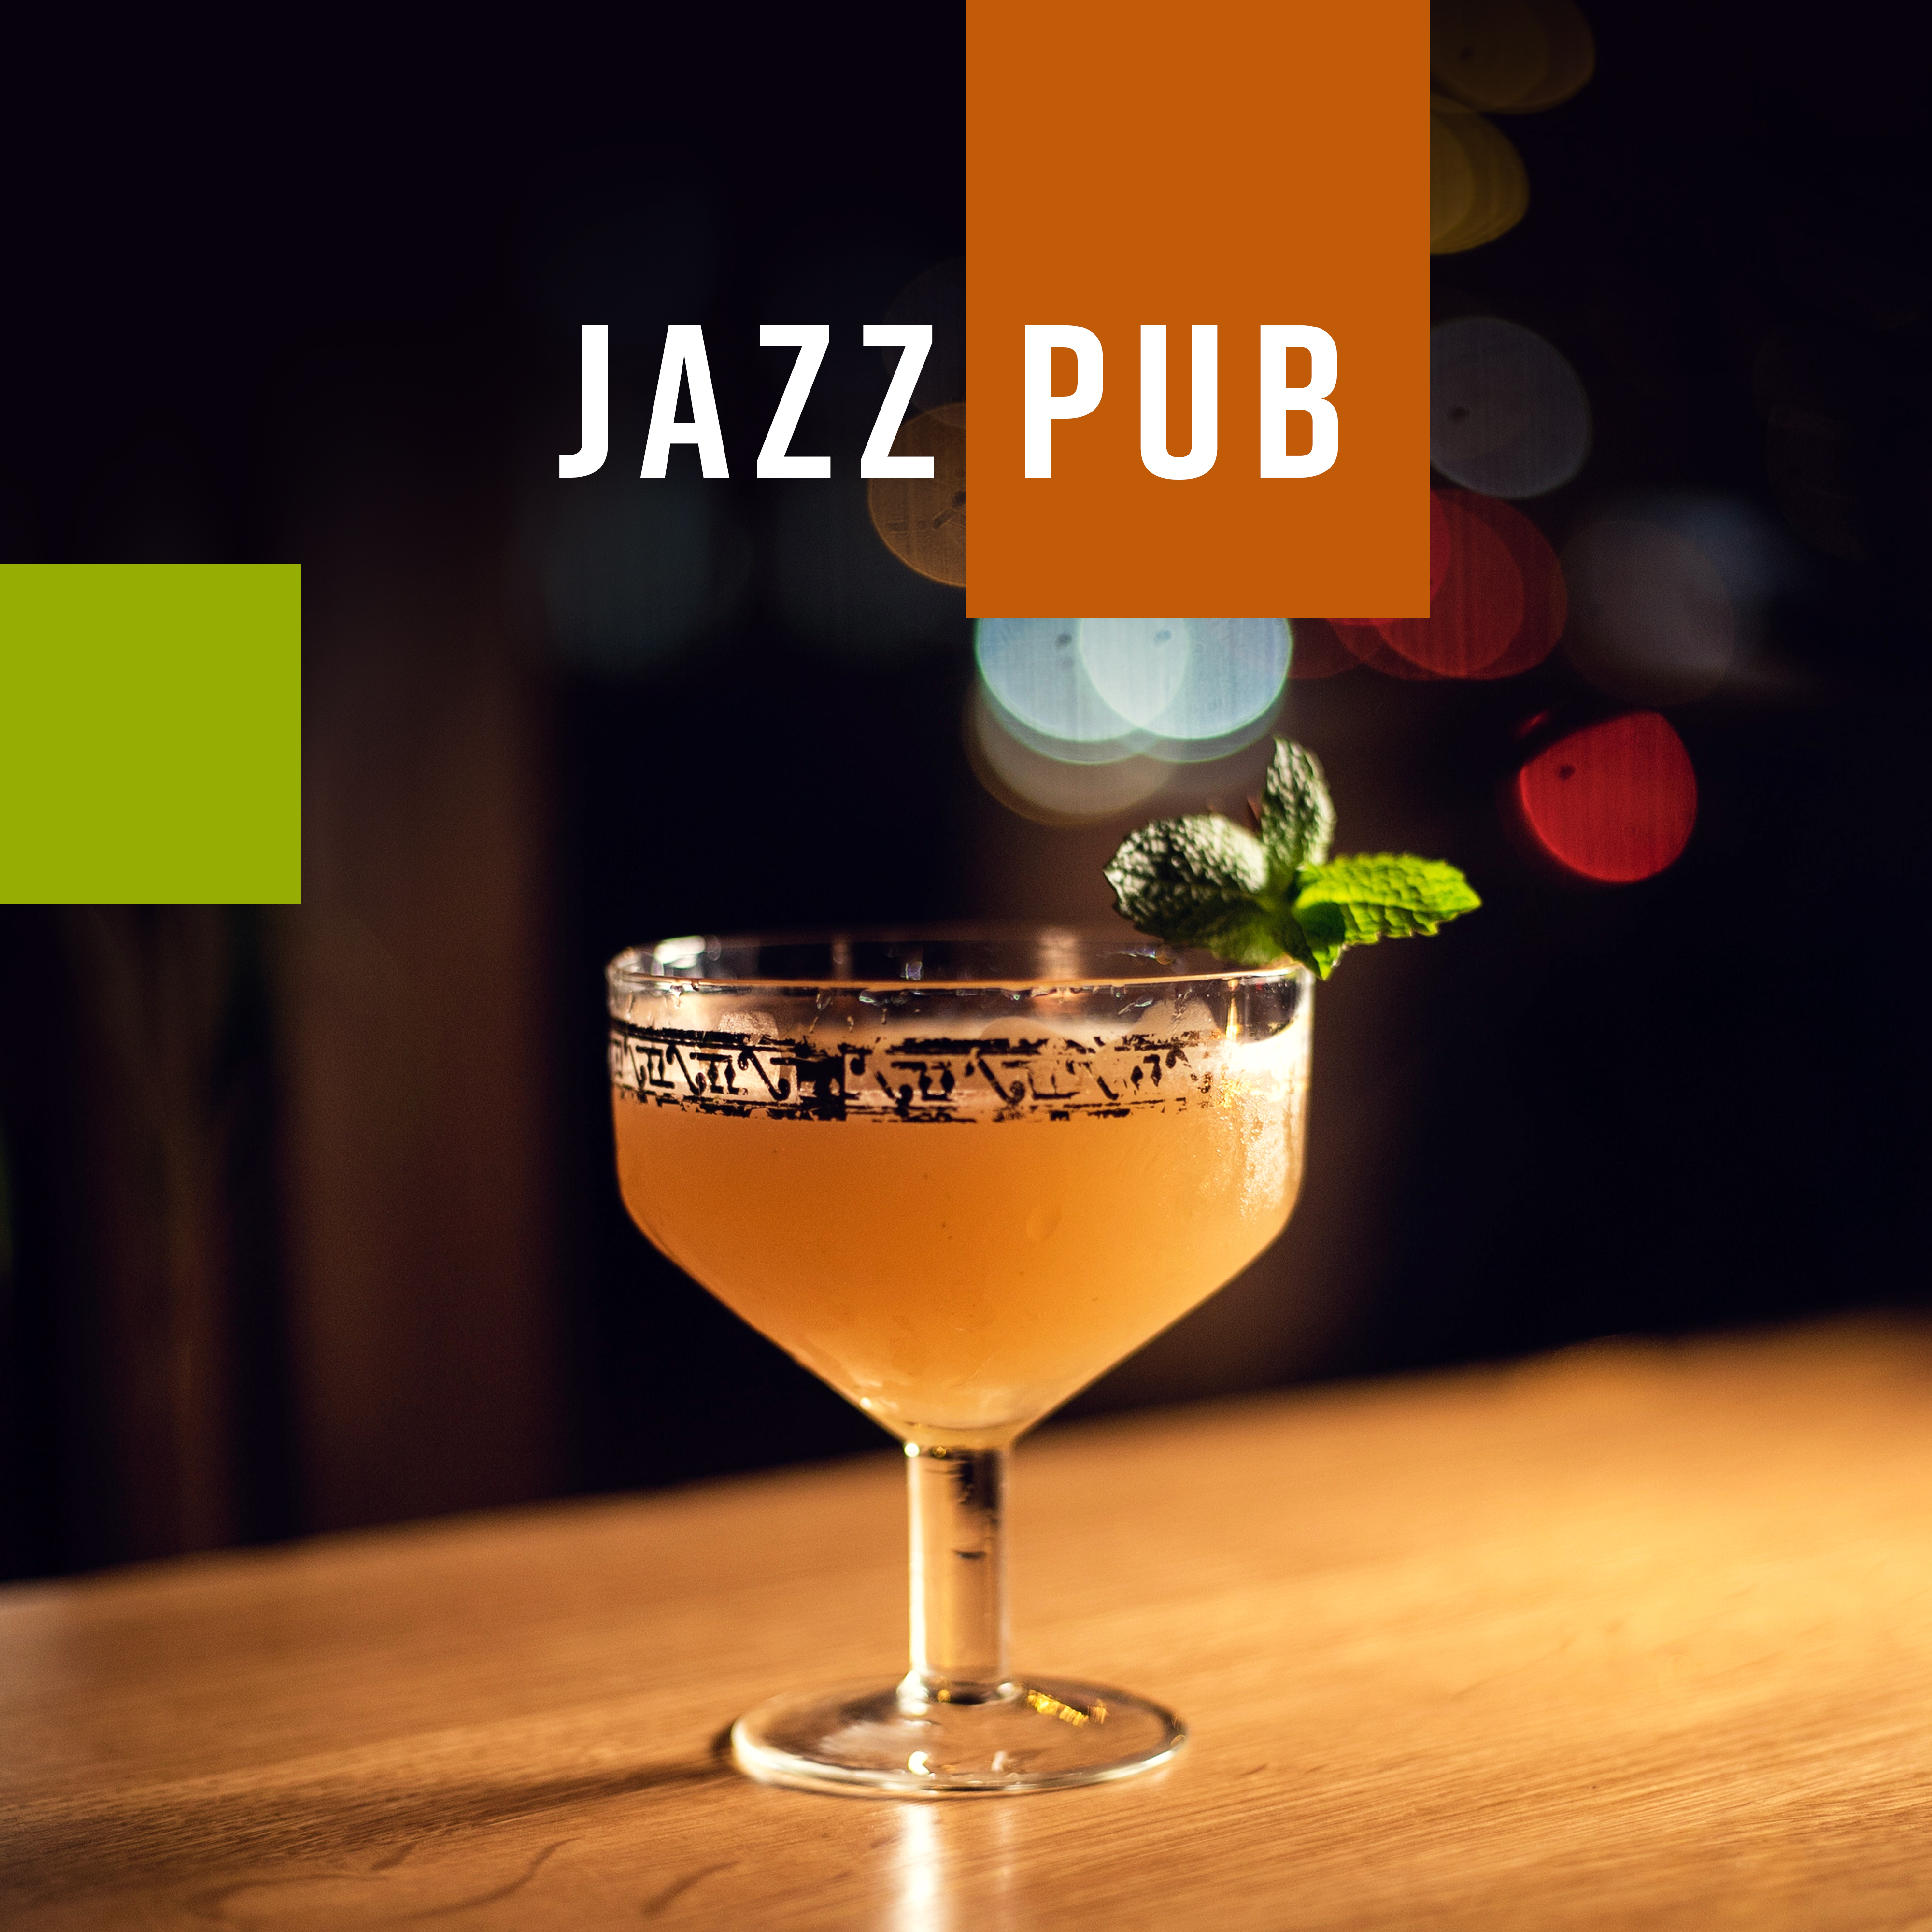 Jazz Pub: Instrumental Jazz Music